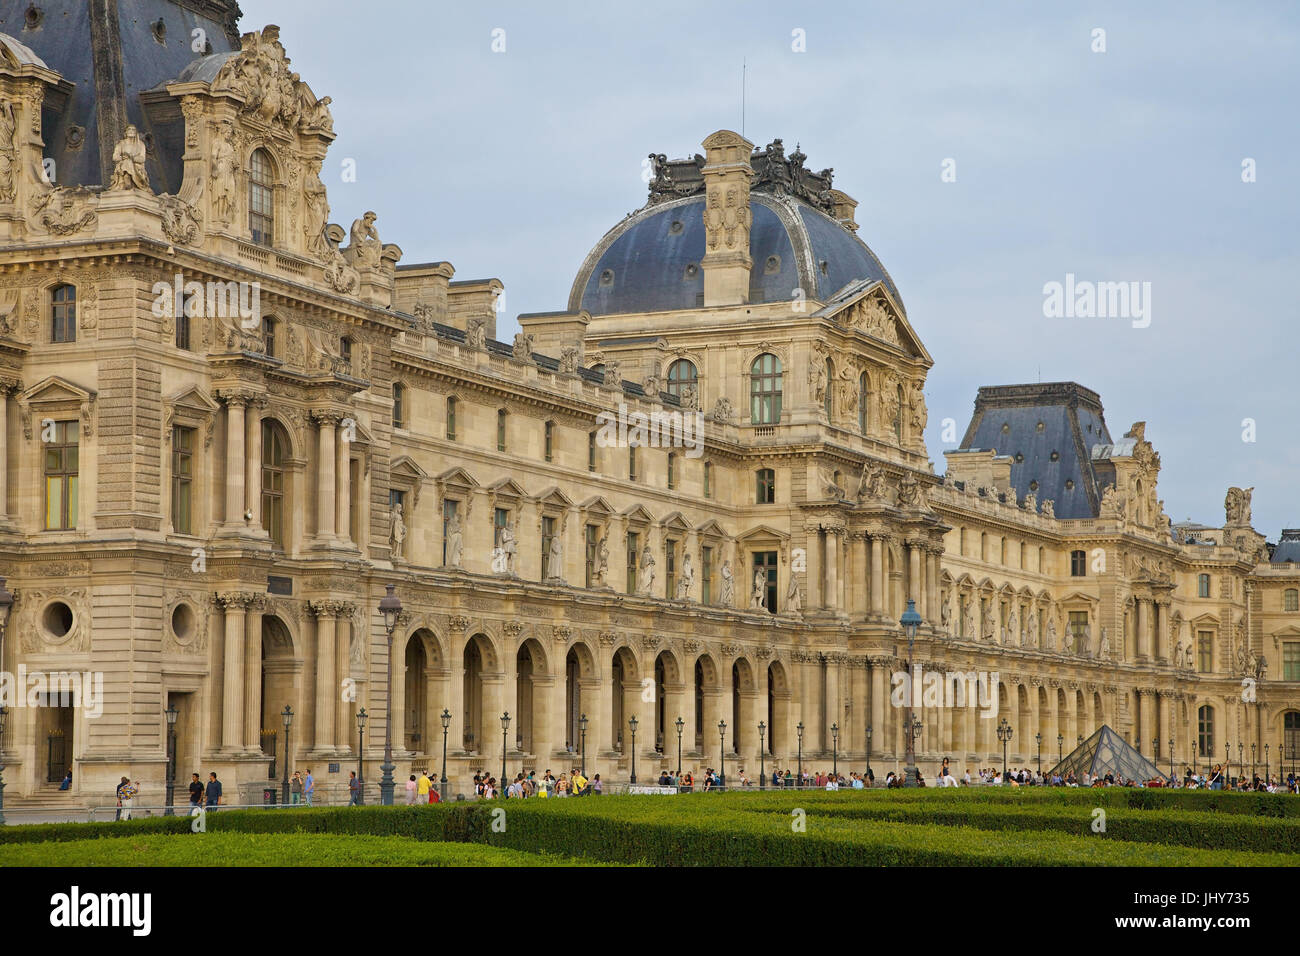 El Louvre, París, Francia - El Louvre, París, Francia, Frankreich - Louvre Foto de stock